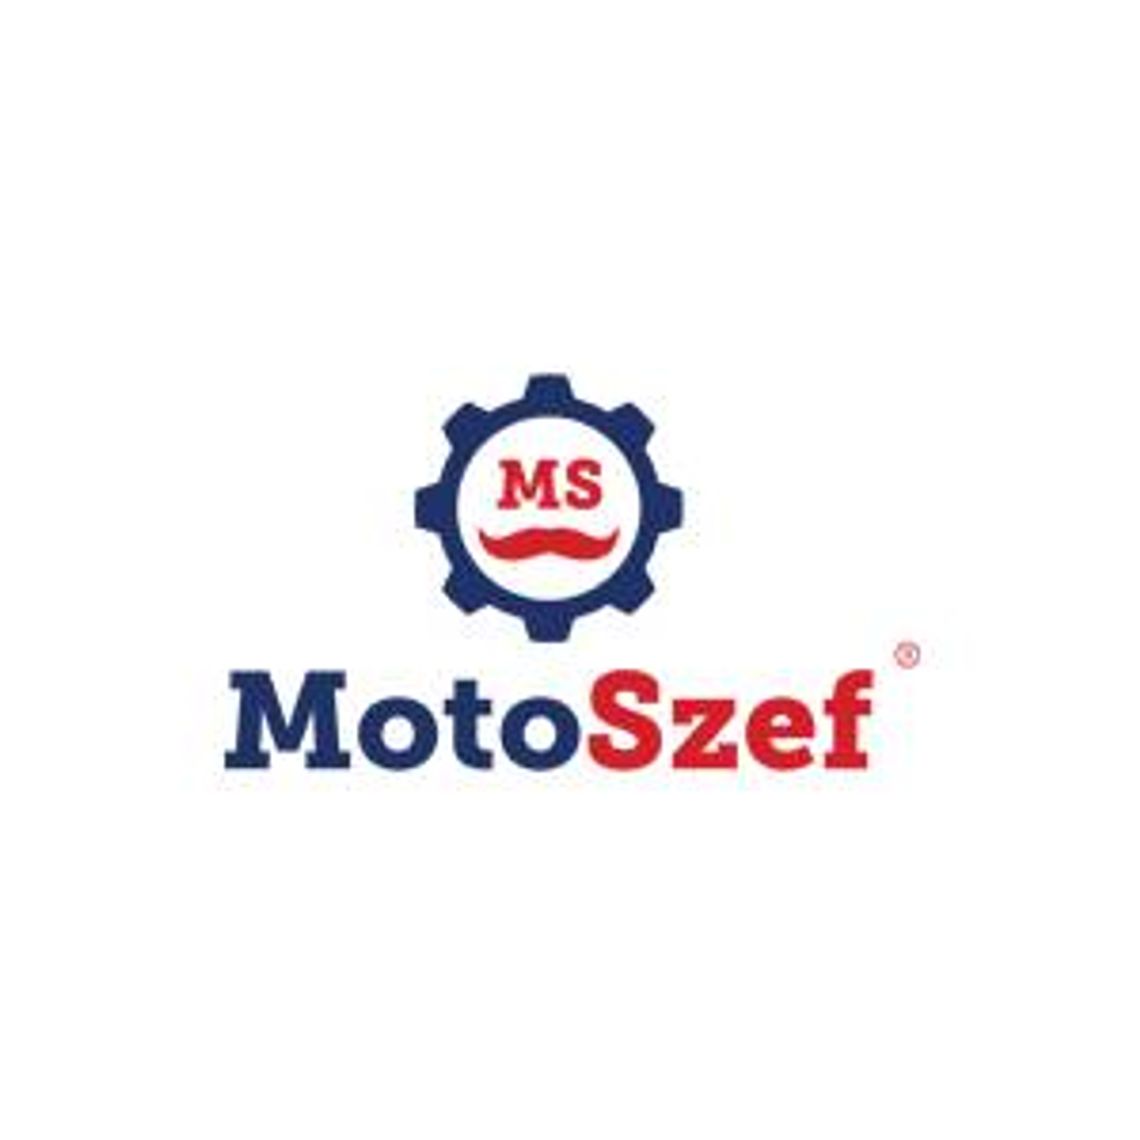 Oryginalne części samochodowe - MotoSzef